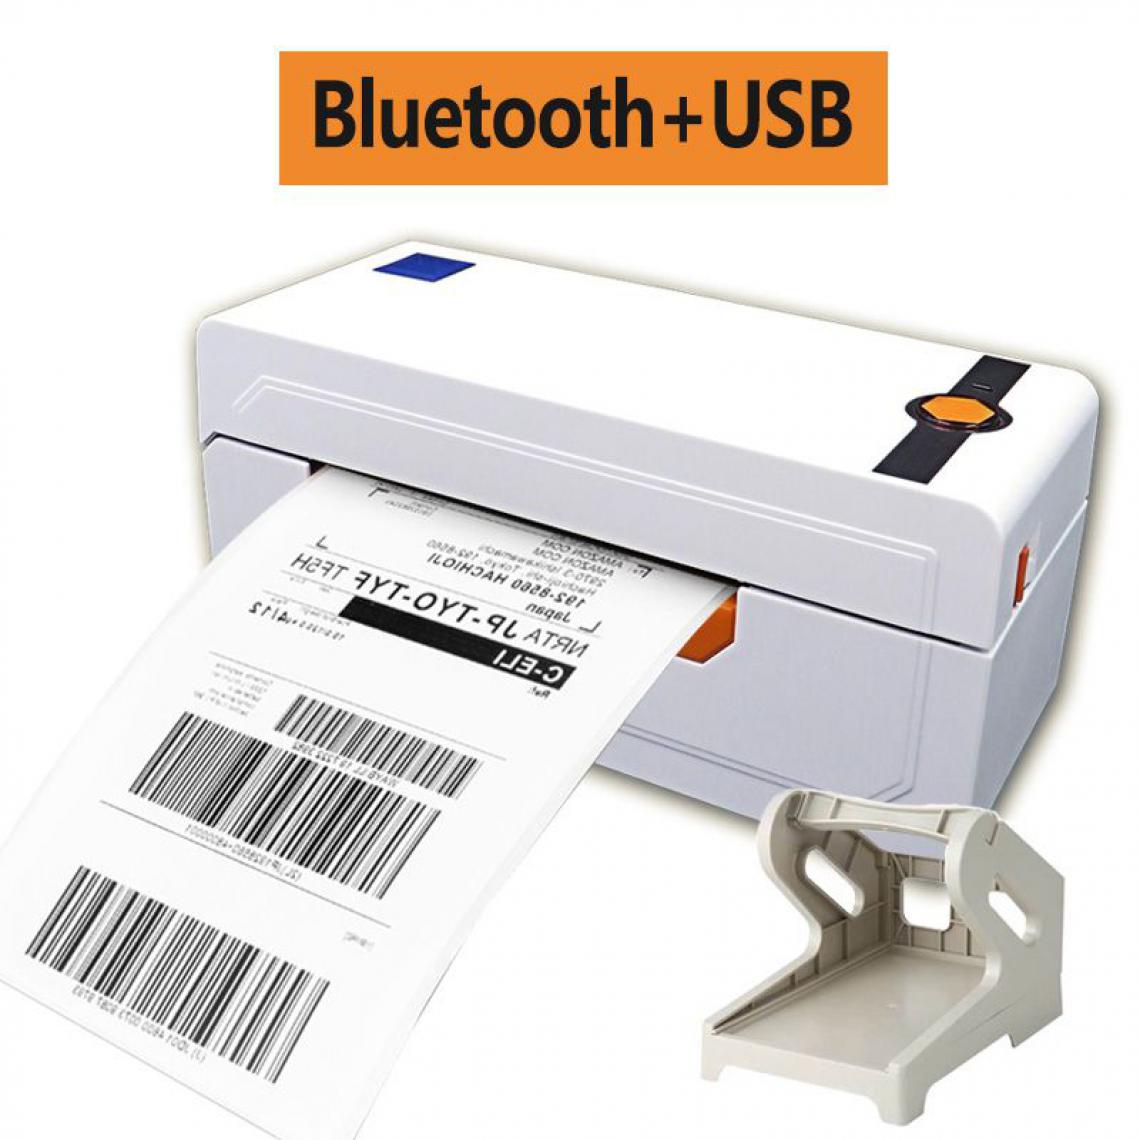 Generic - Imprimante Thermique Portable de Tickets de Caisse 20 à 80 mm avec Holder  , Connexion par  USB et Bluetooth  , Compatible avec Mac OS / IOS ,Linux , Window et  Android,- 8.2  * 9.2  * 20 cm  - Blanc   - Imprimantes d'étiquettes